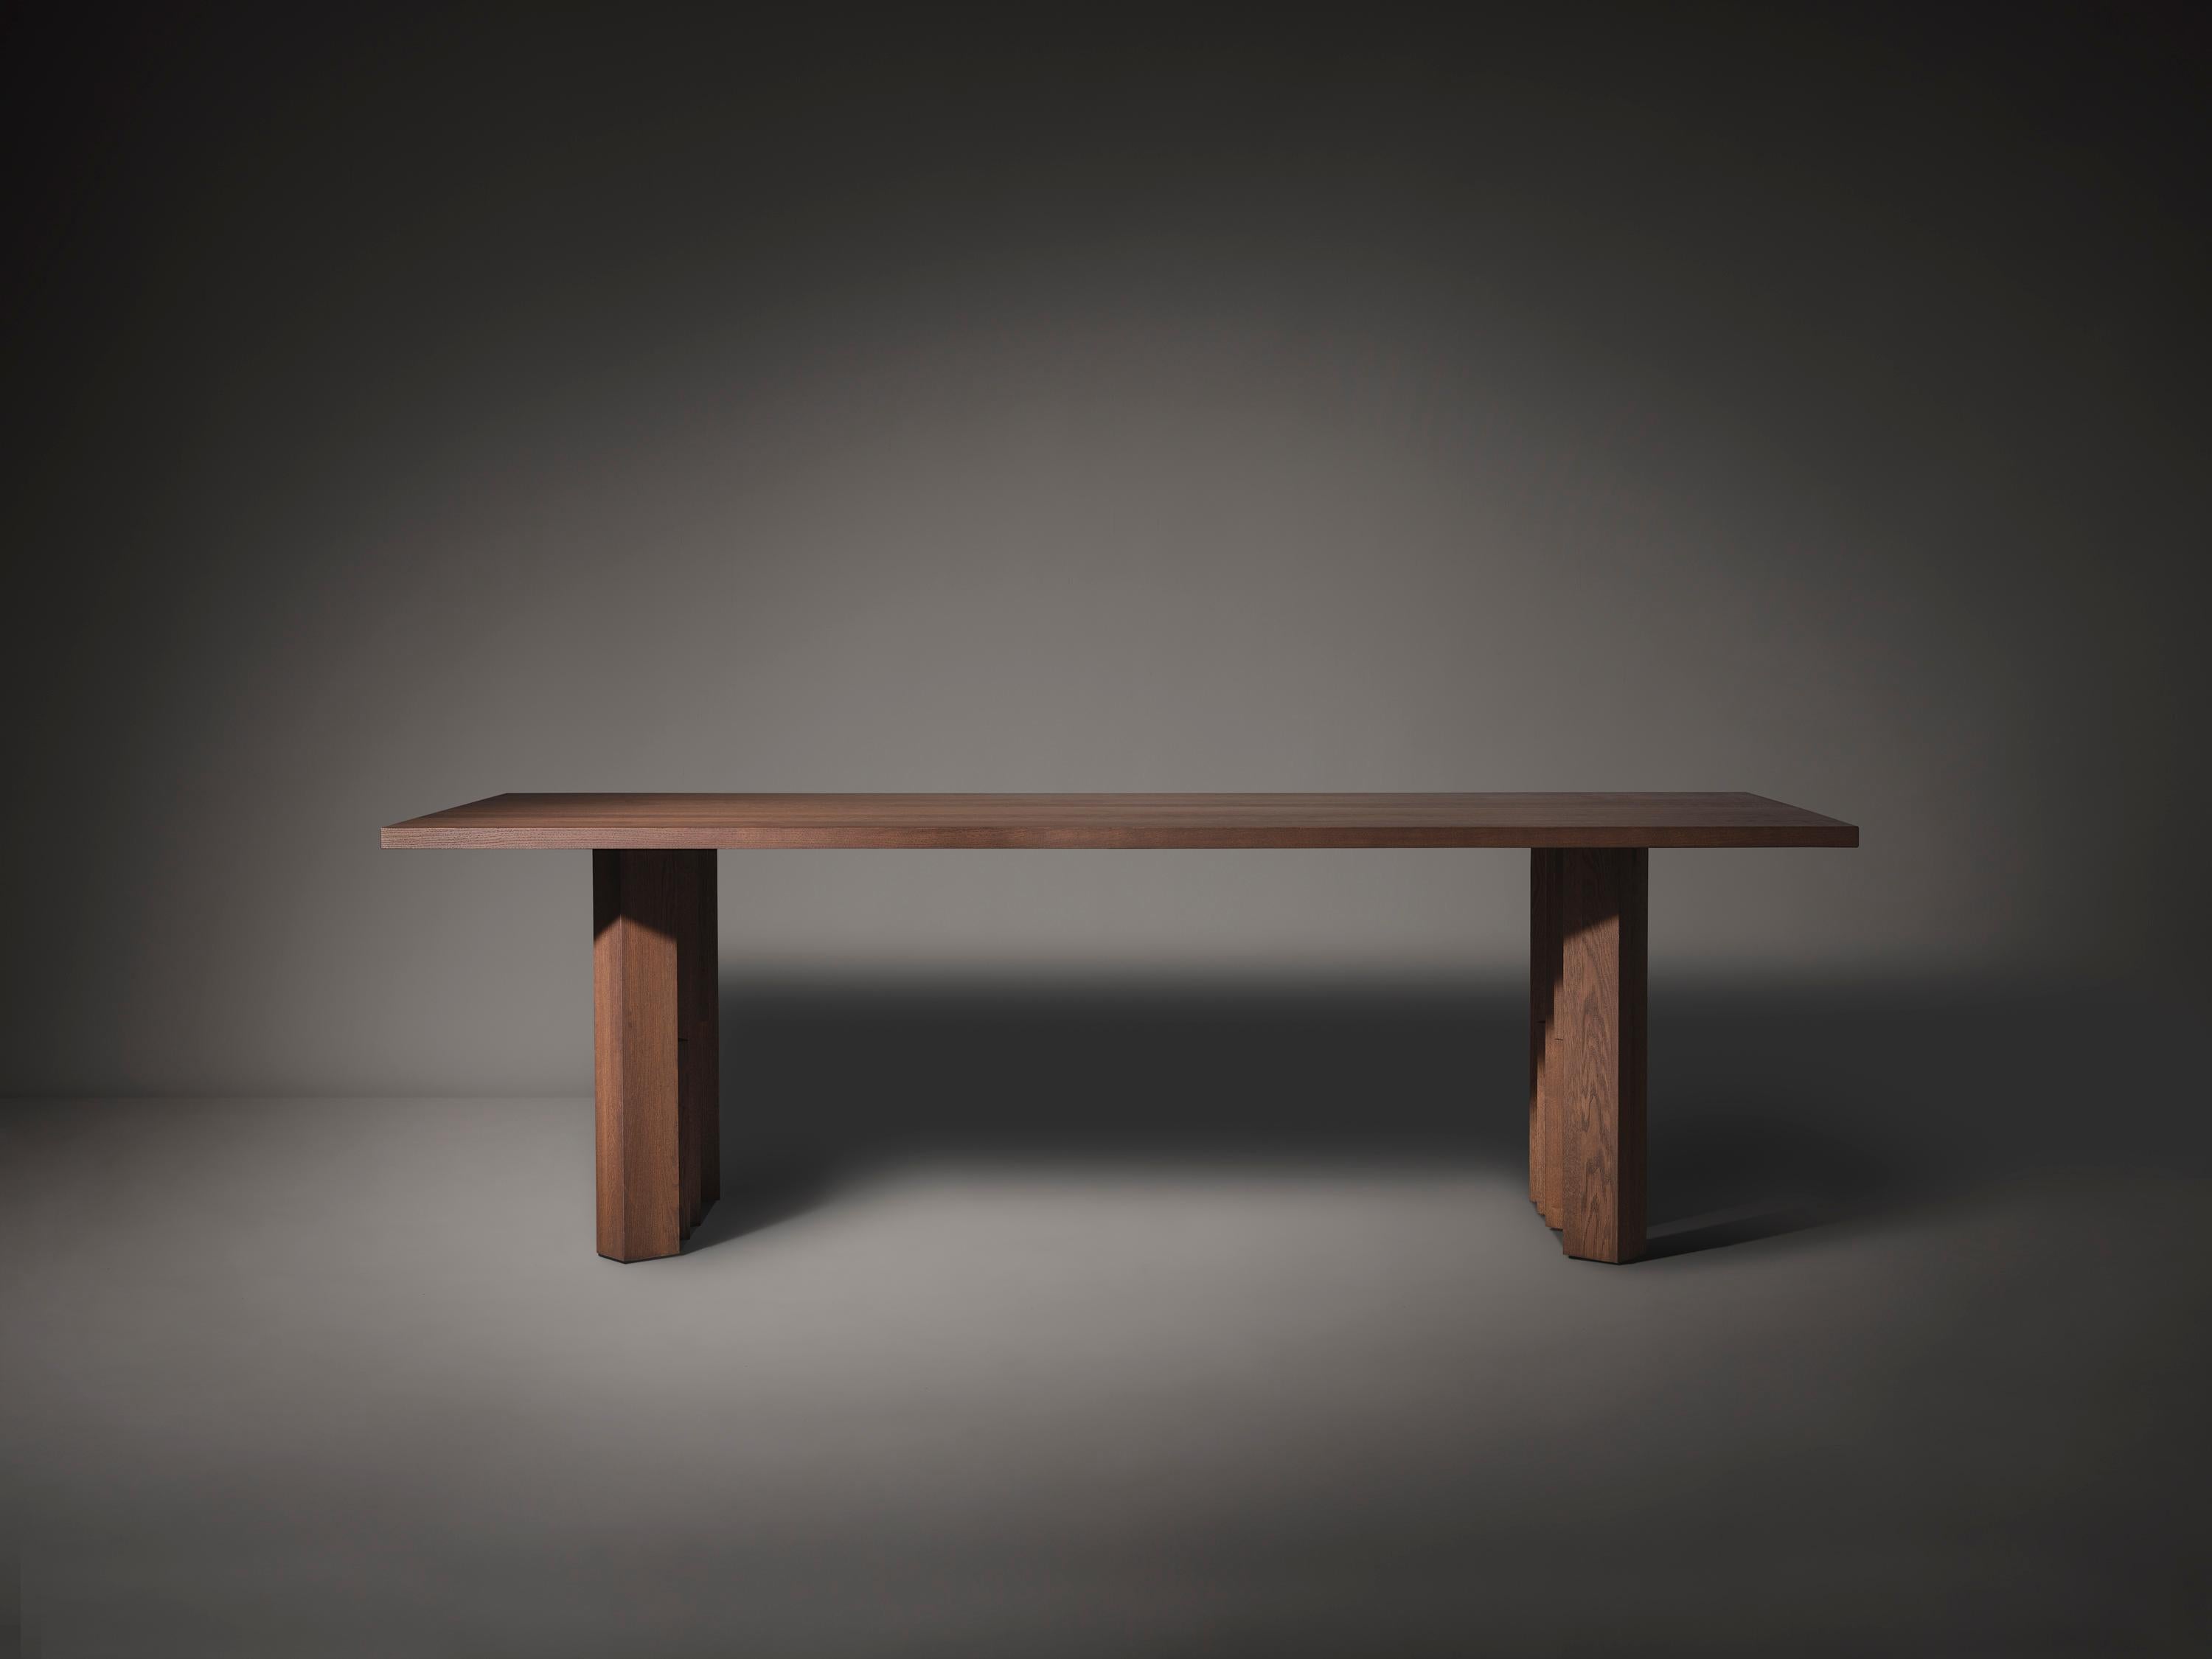 Der vom Stil der Amsterdamer Schule inspirierte Fenestra-Tisch ist aus massivem Hartholz gefertigt und wird nach Maß hergestellt. Der Entwurf ist vom Backsteinexpressionismus inspiriert, der architektonischen Bewegung, die im Amsterdamer 